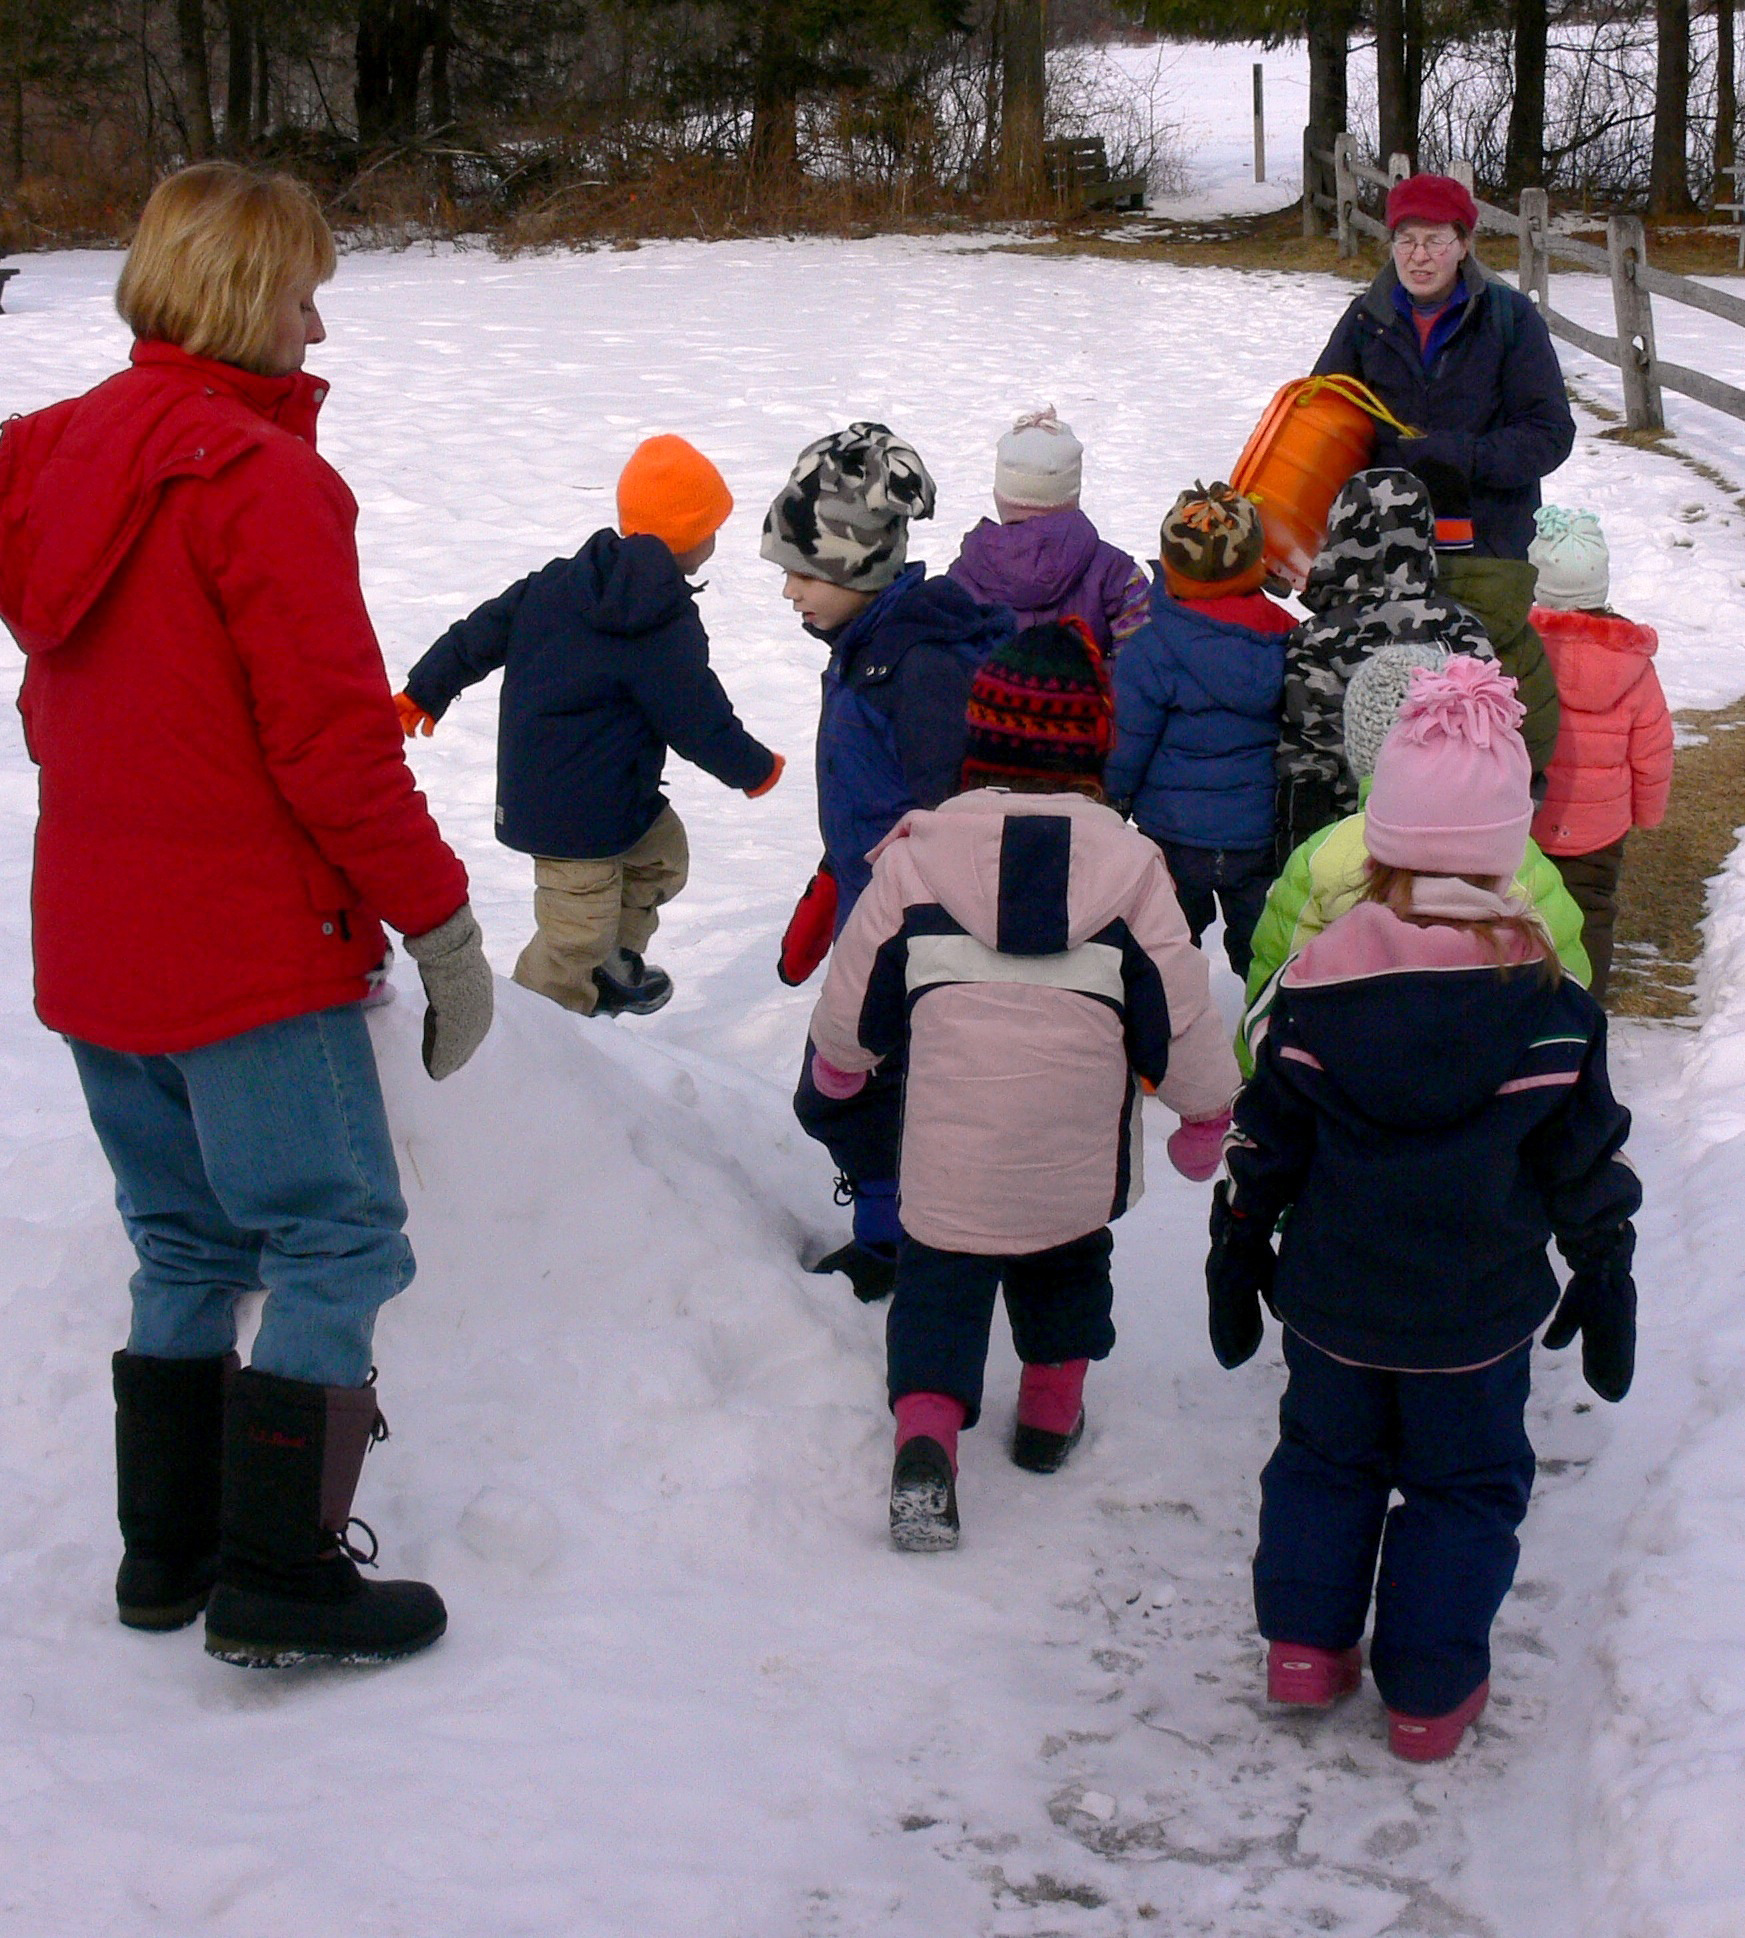 WM Preschoolers in Snow